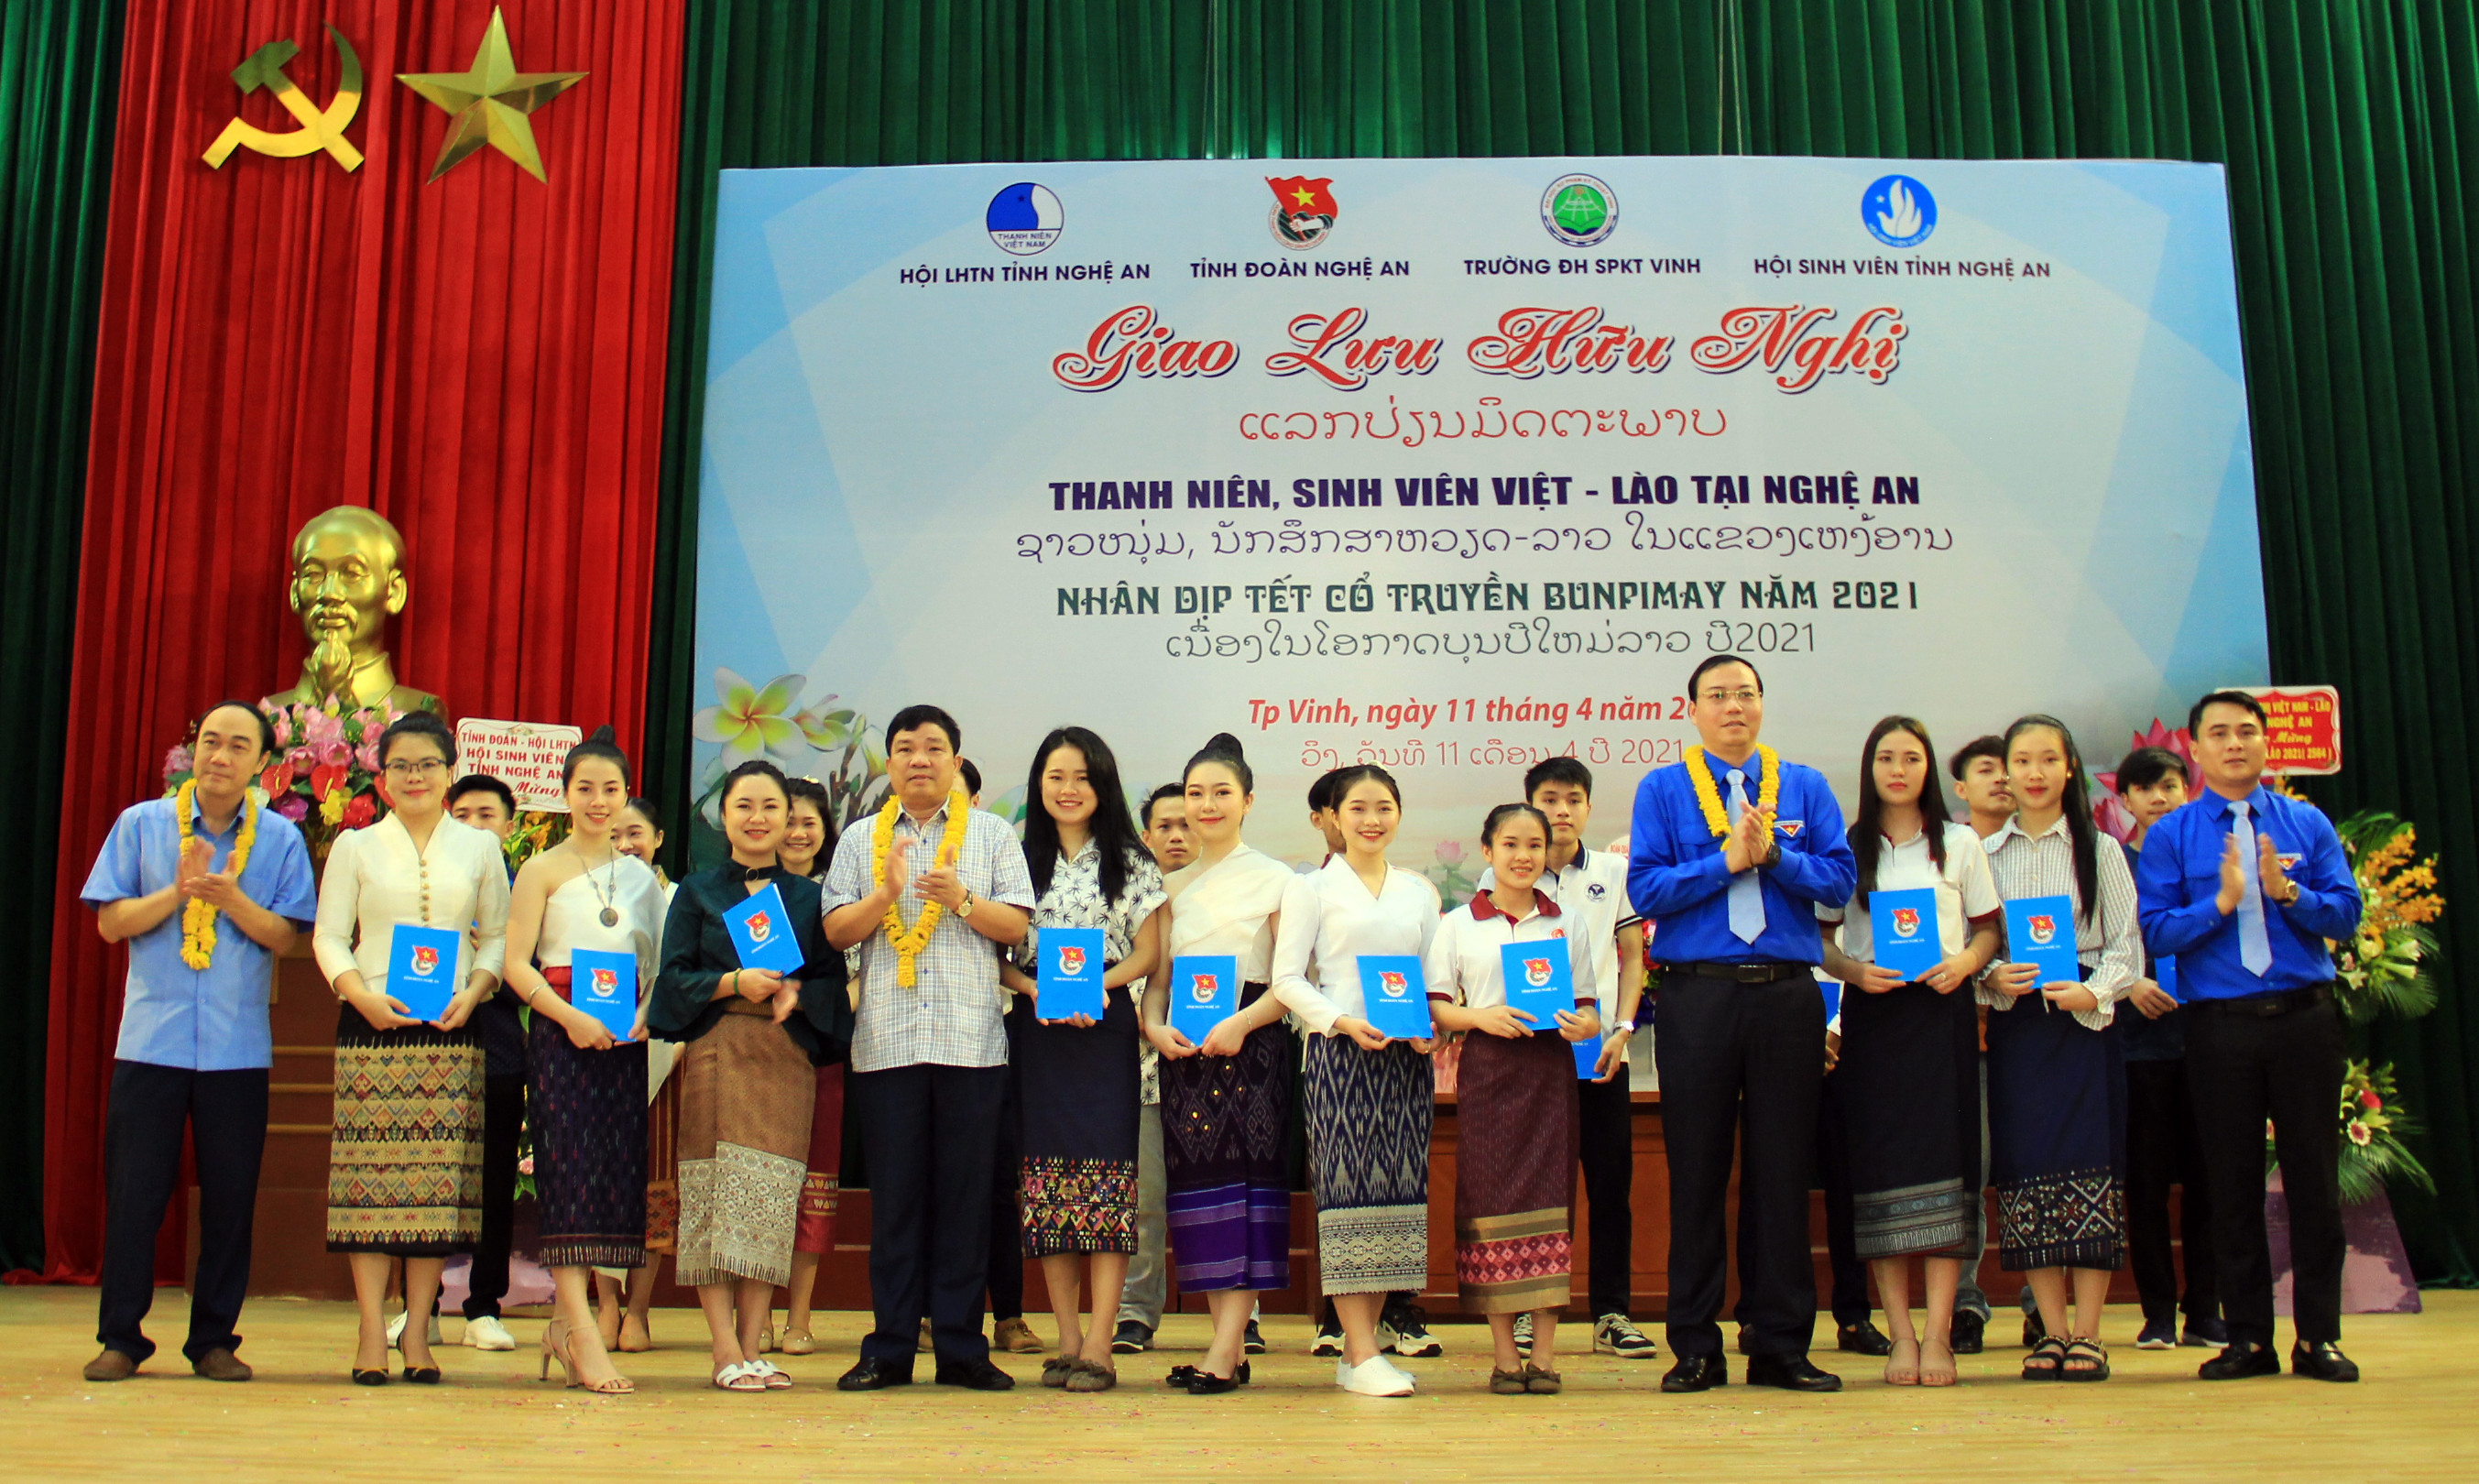 Ban tổ chức tặng quà cho các lưu học sinh Lào có thành tích xuất sắc trong thời gian qua. Ảnh: Thanh Quỳnh